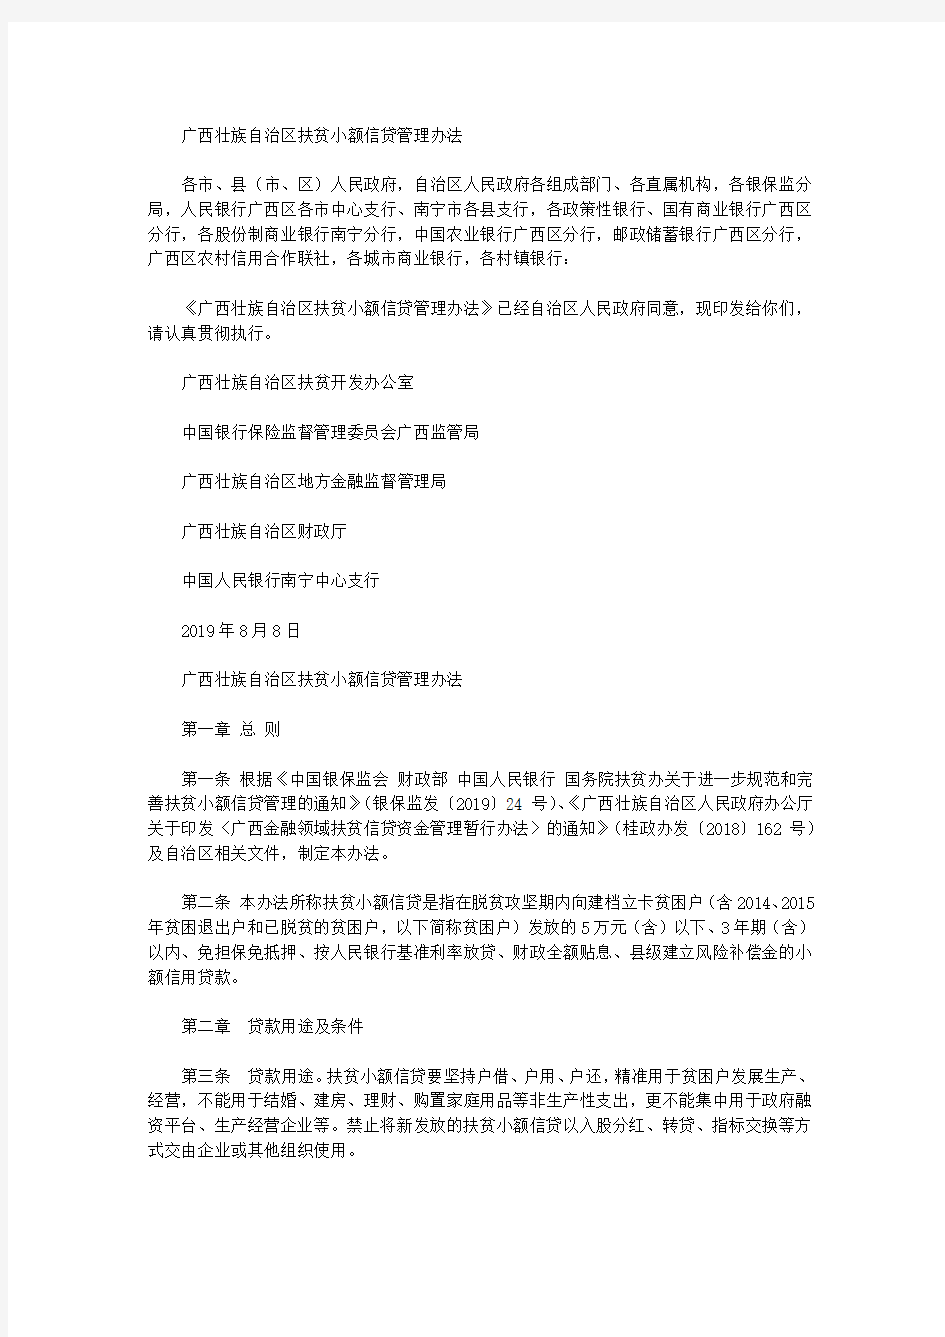 广西壮族自治区扶贫小额信贷管理办法